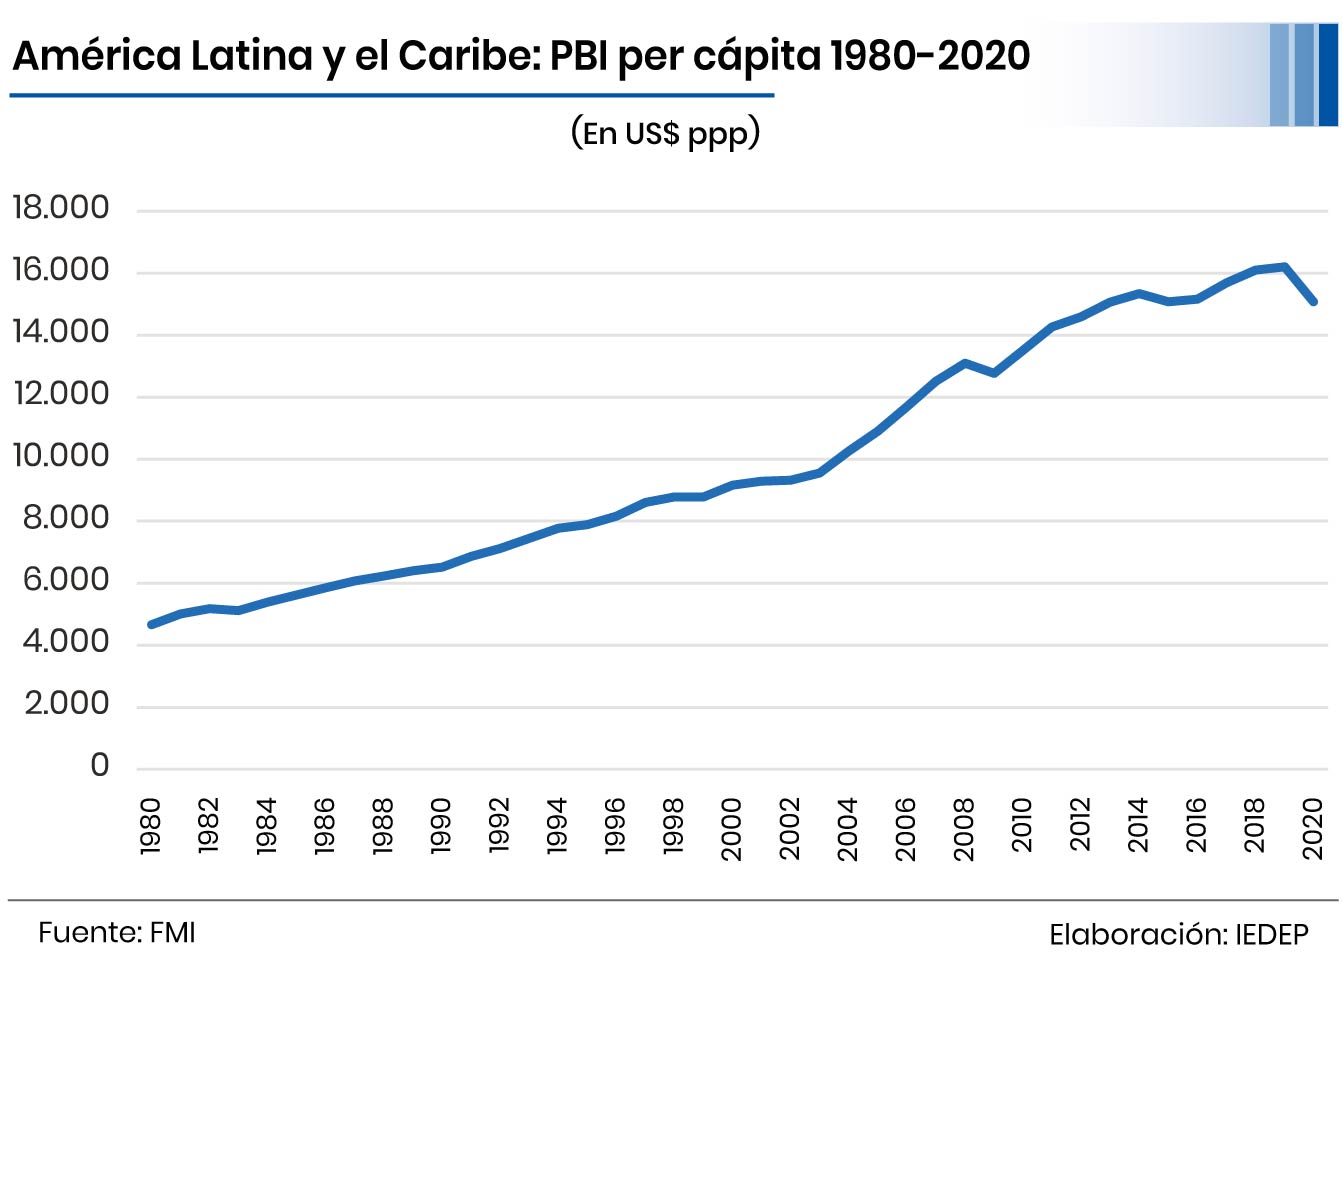 Modelo de Sustitución de Importaciones ya fracasó en América Latina - La  Cámara